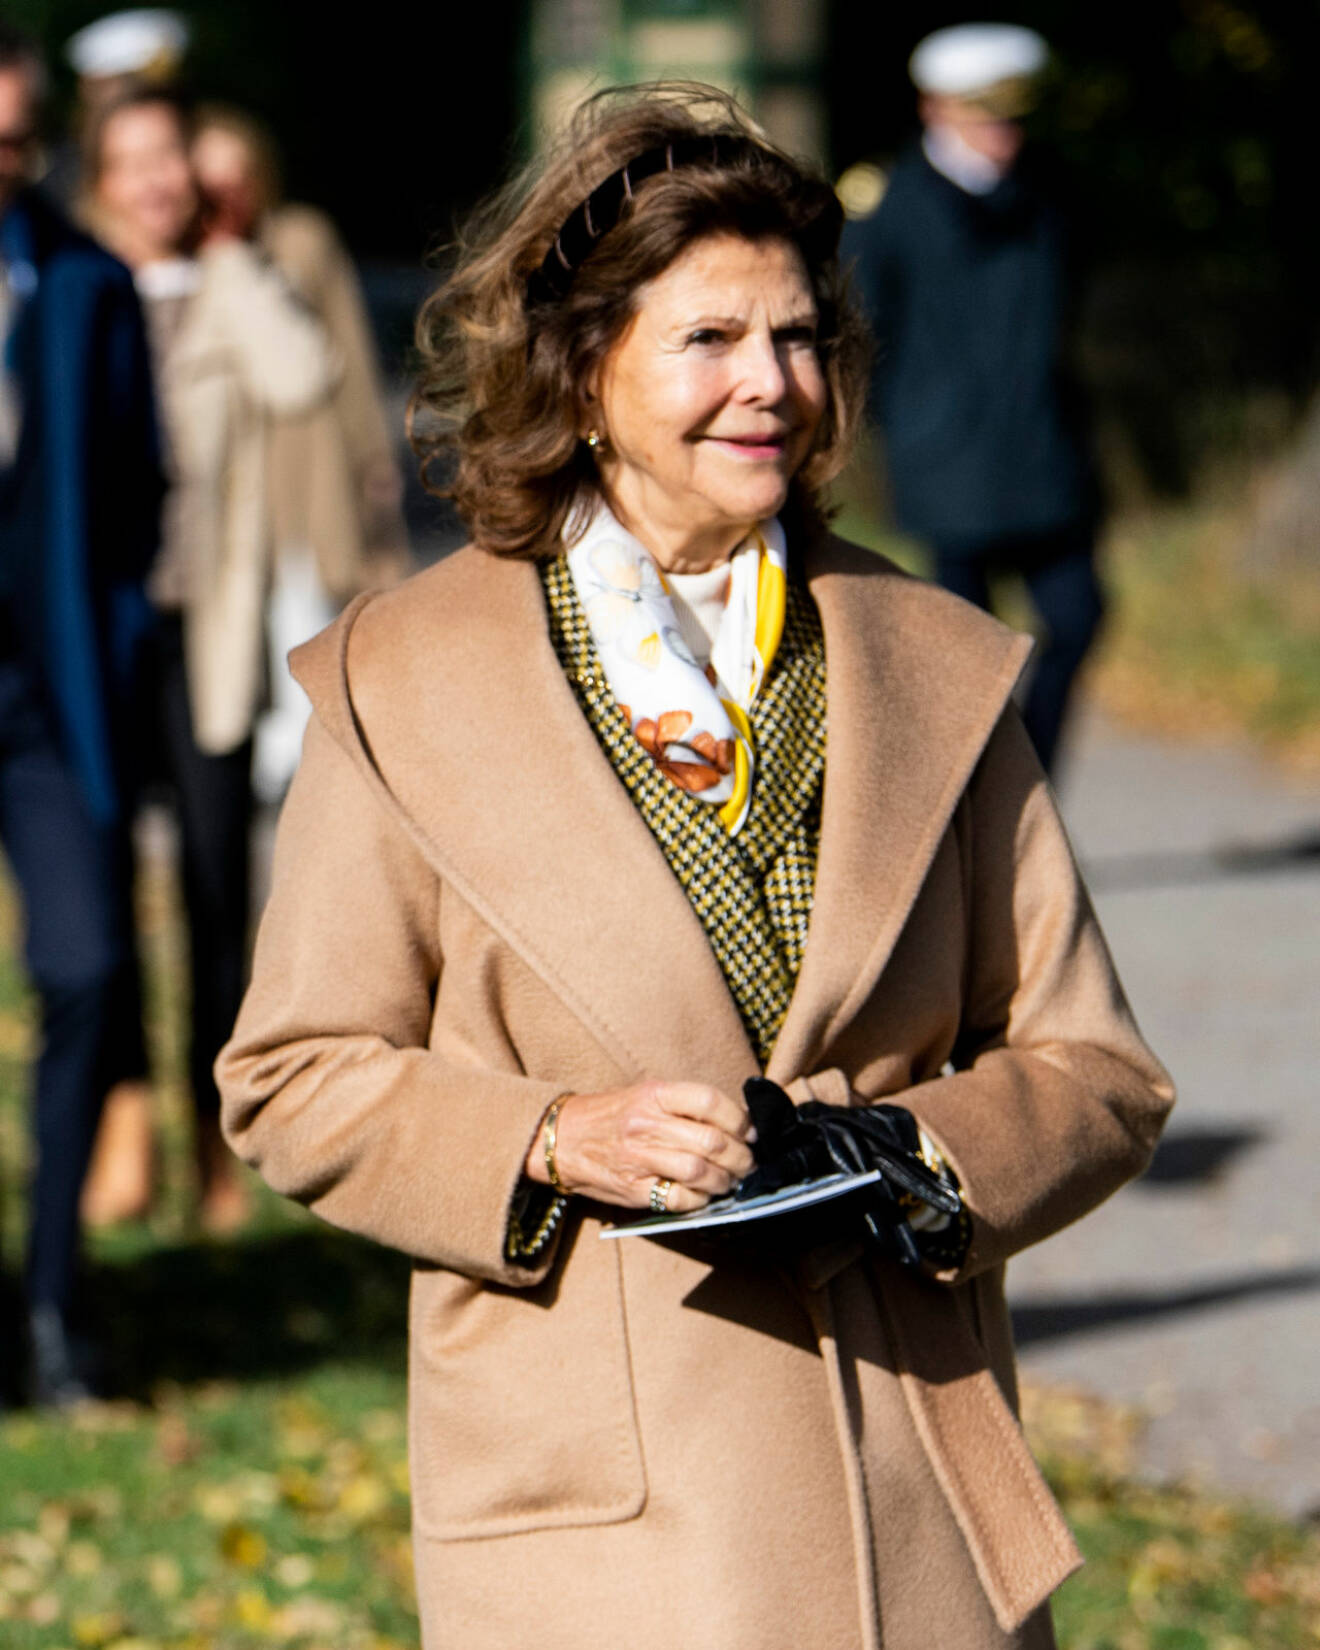 Drottning Silvia på Djurgården i kamelfärgad jacka.